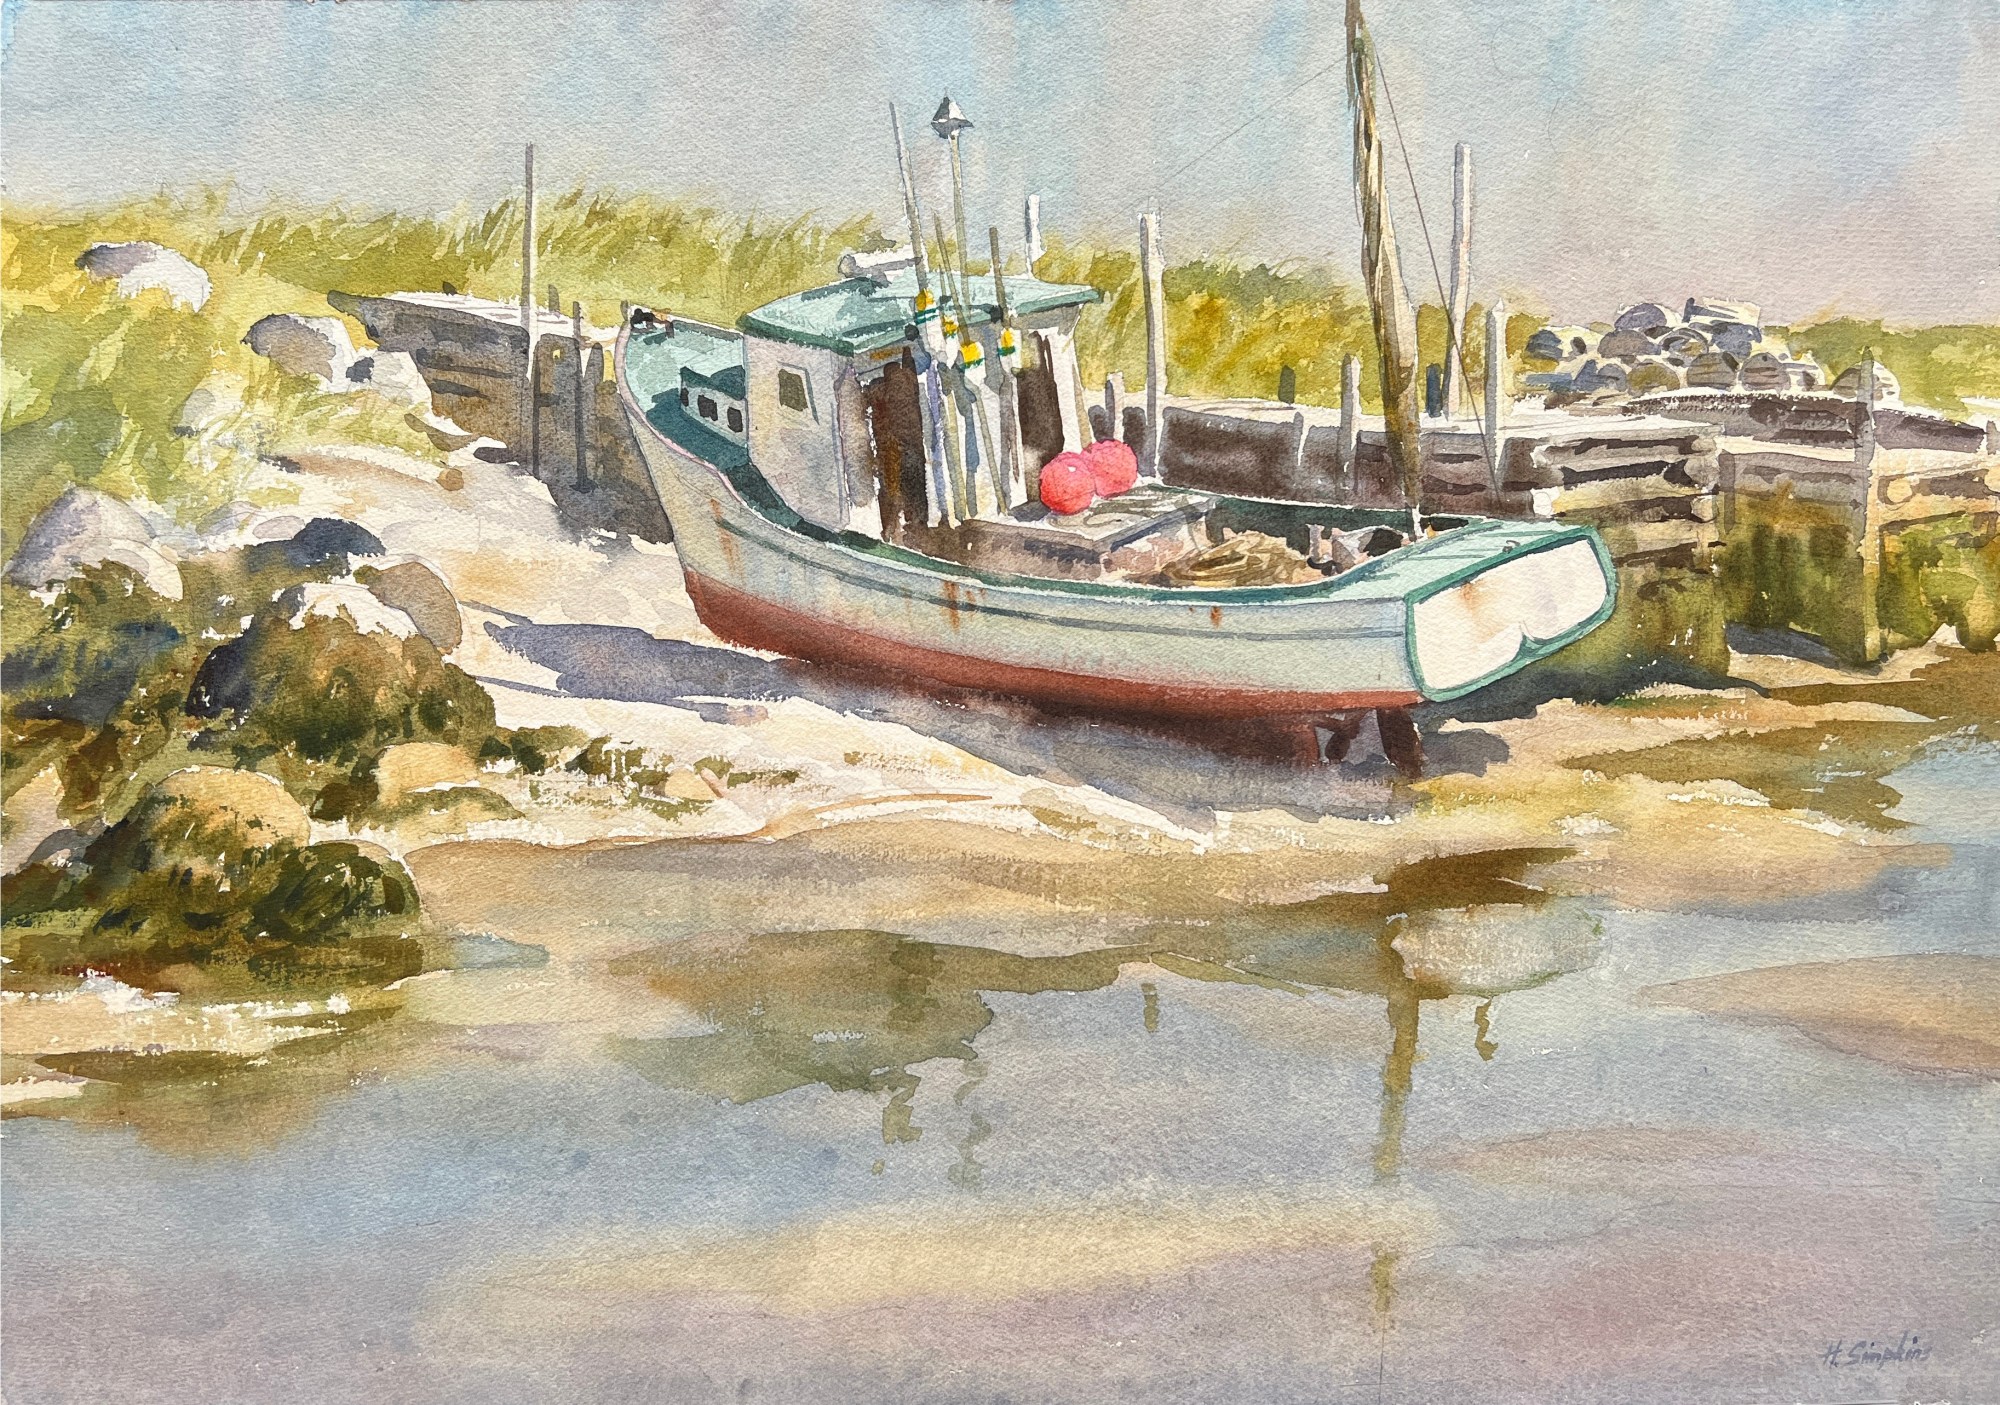 Henry J. Simpkins, Old Fishing Boat, Artworks, Alan Klinkhoff Gallery